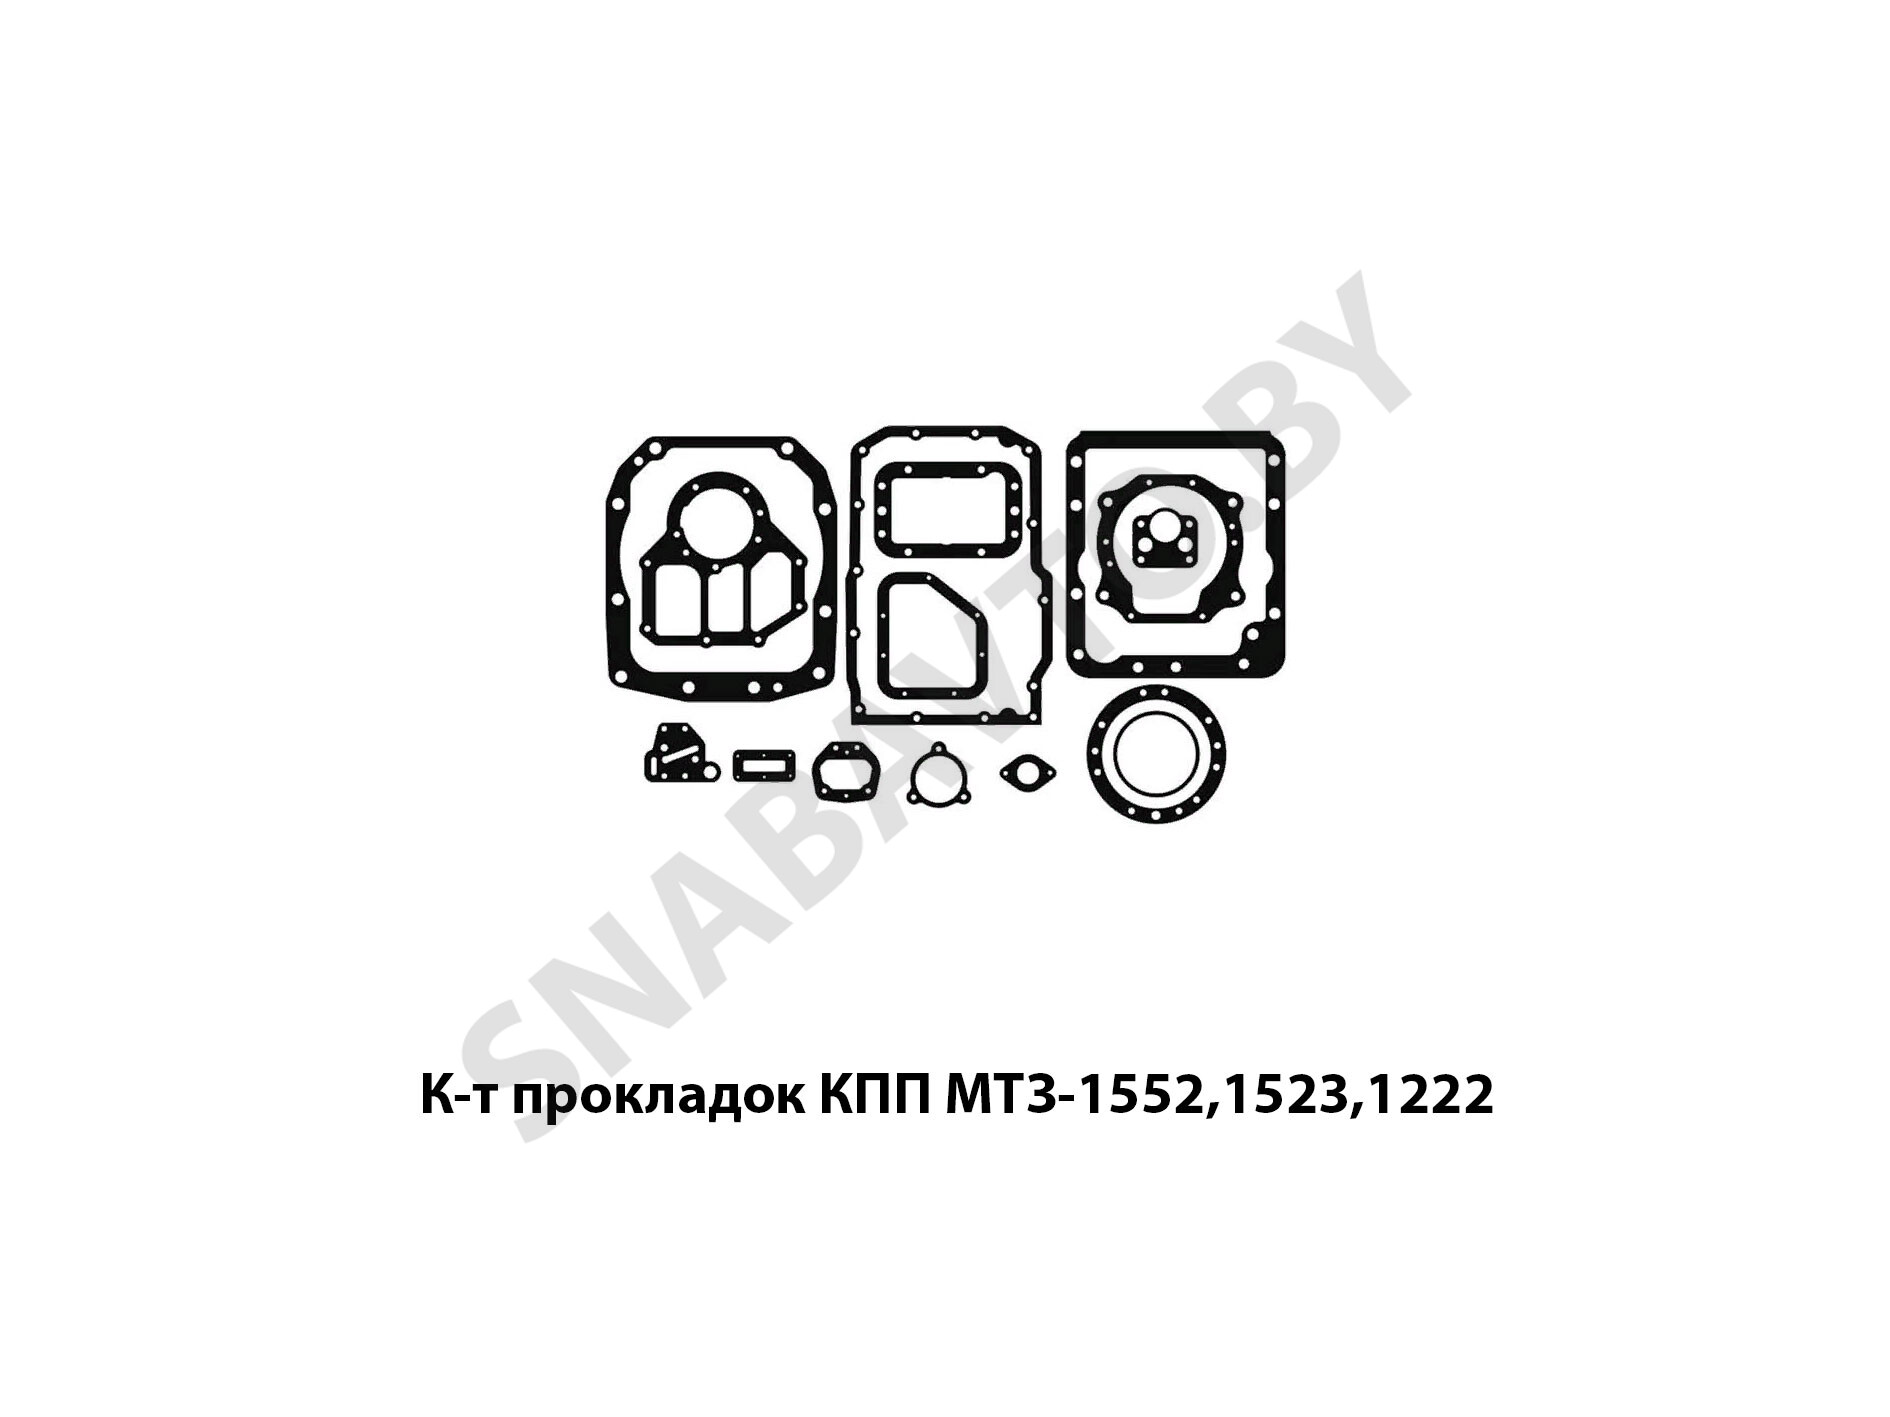 К-т прокладок КПП МТЗ-1552,1523,1222 (15 позиций) б/н, RSTA